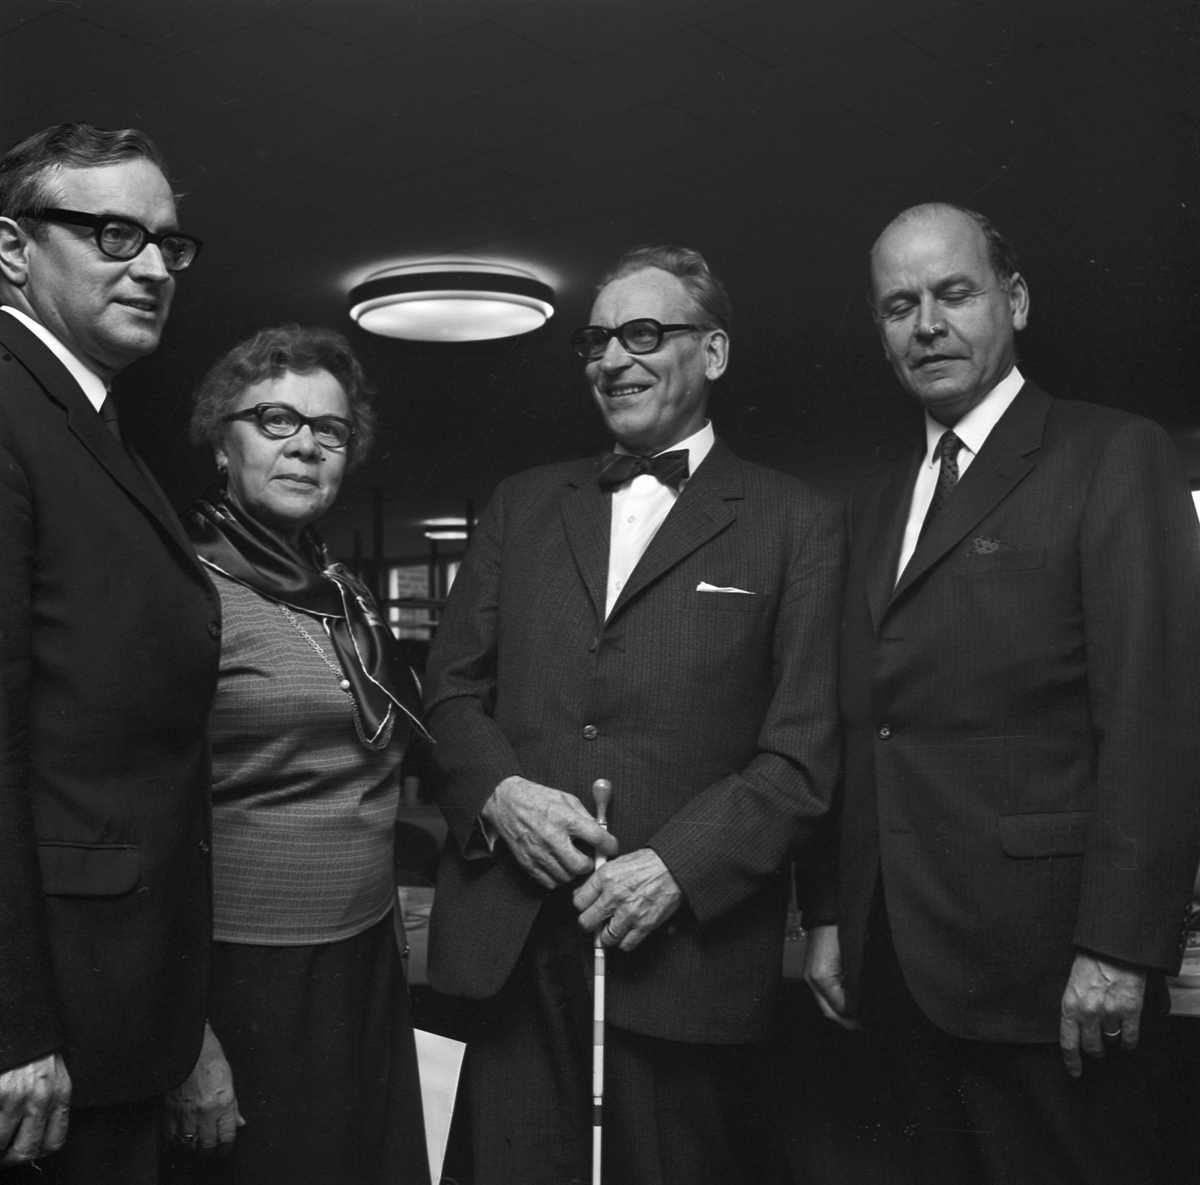 Män och kvinna på konferens i Tierp, Uppland 1969